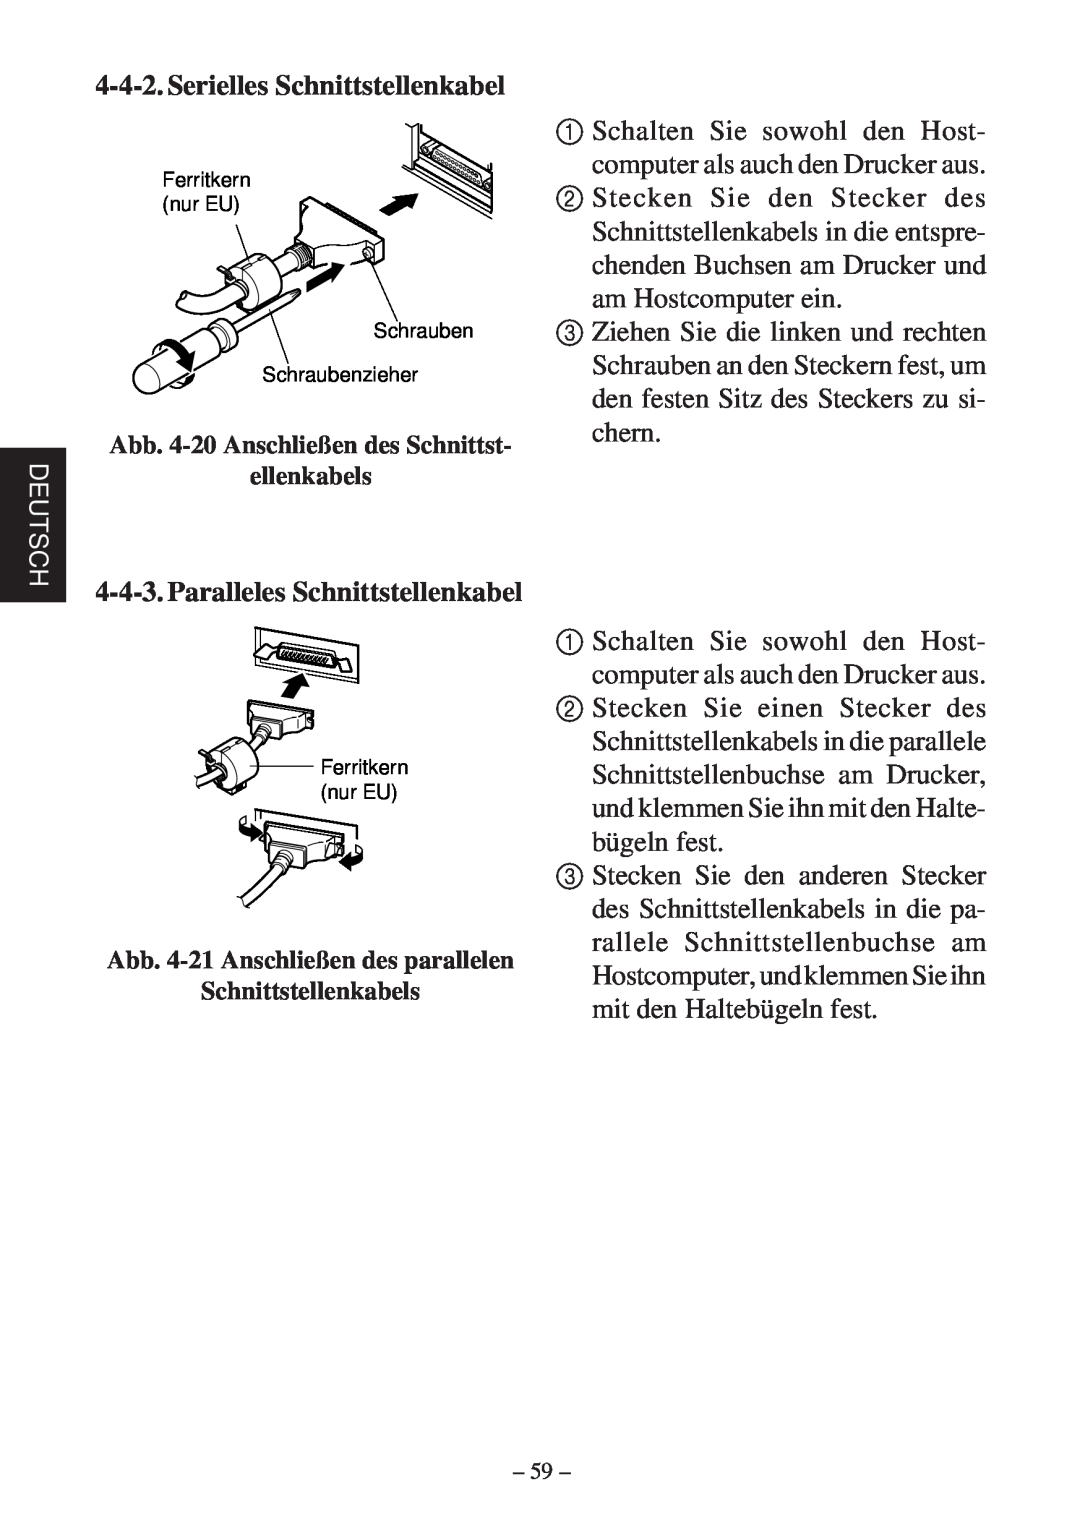 Star Micronics SP200F user manual Serielles Schnittstellenkabel, Paralleles Schnittstellenkabel 